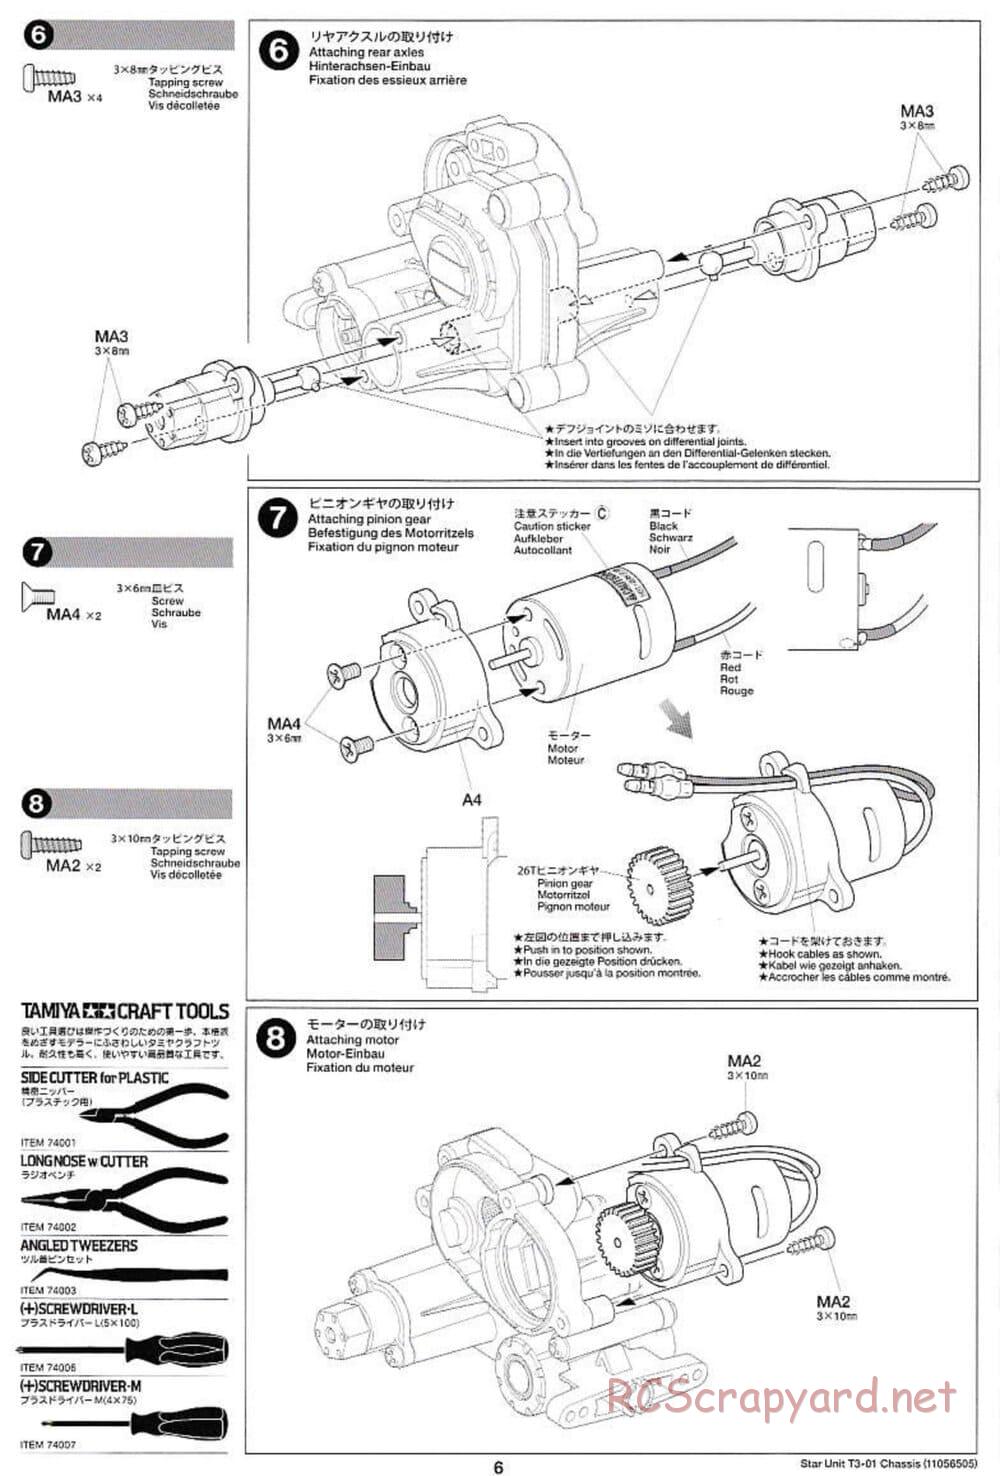 Tamiya - T3-01 Chassis - Manual - Page 6